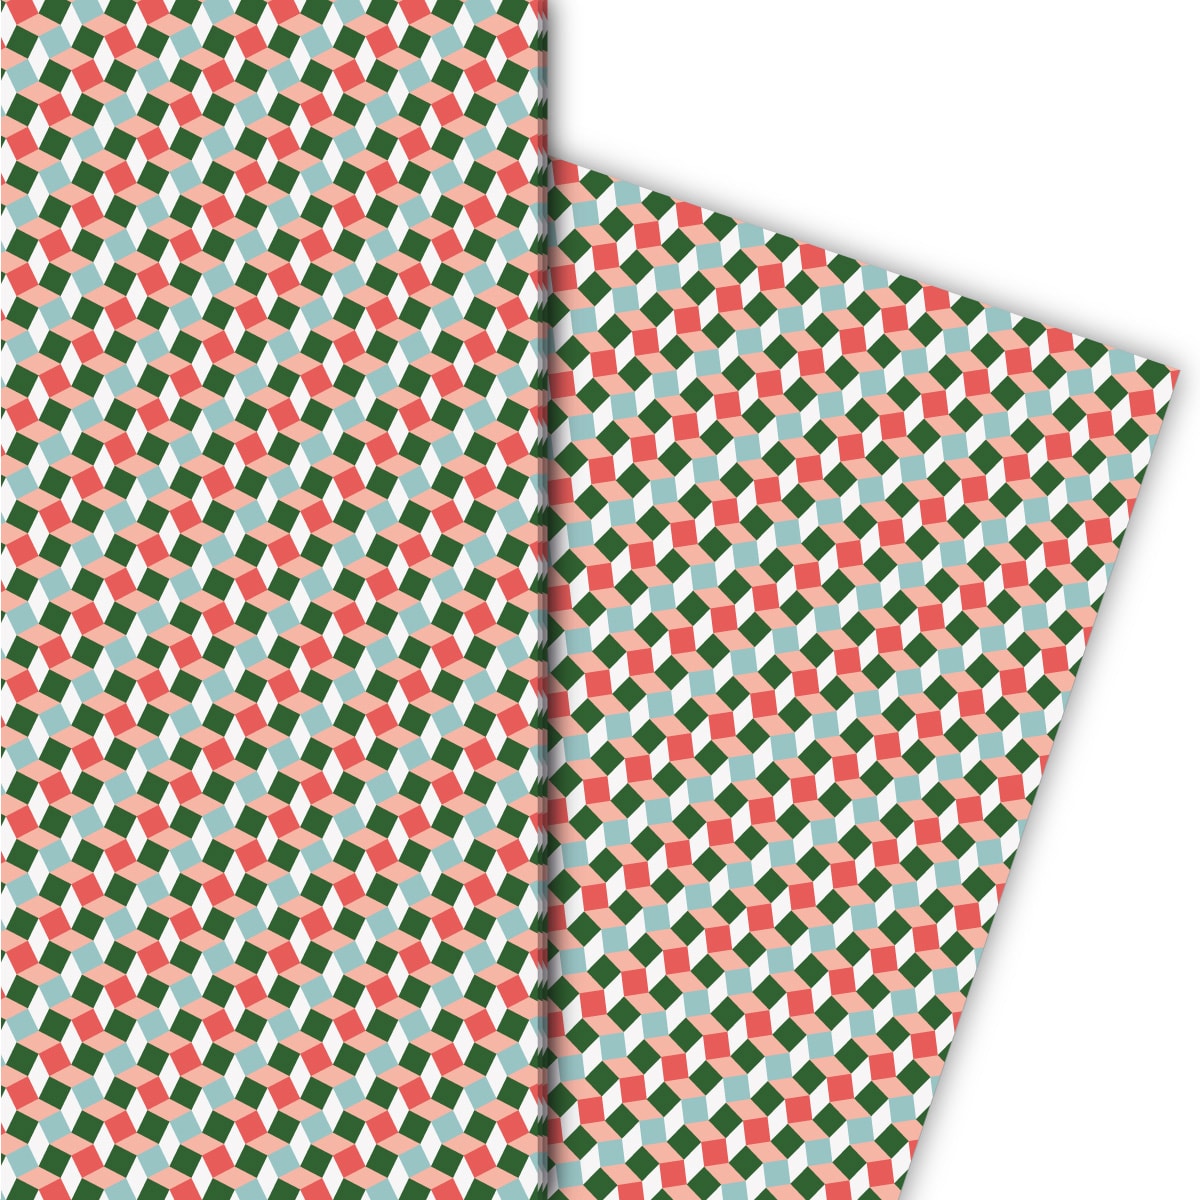 Kartenkaufrausch: Klein gemustertes Geschenkpapier im aus unserer Designer Papeterie in grün